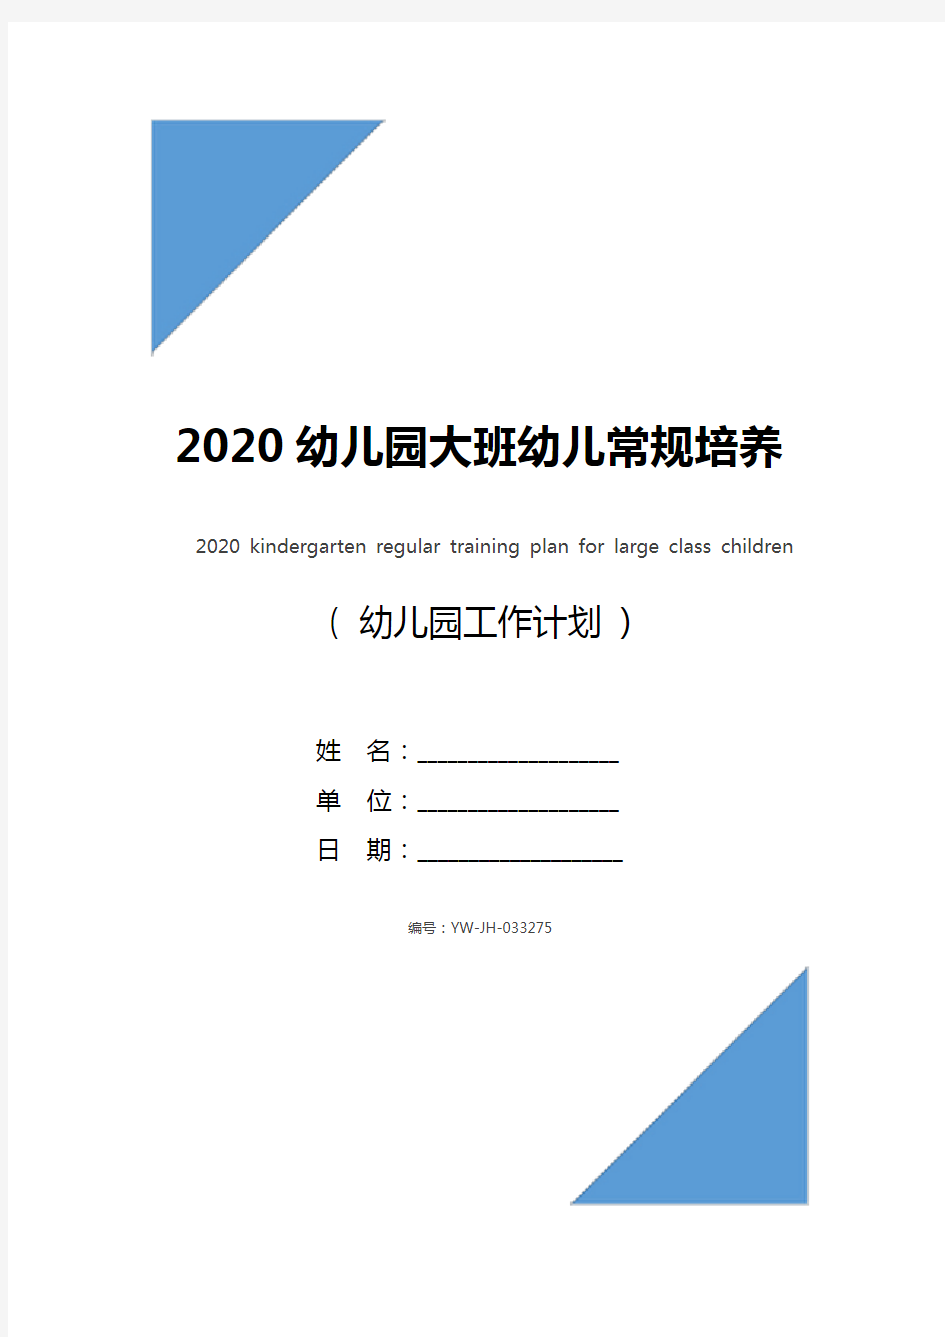 2020幼儿园大班幼儿常规培养计划